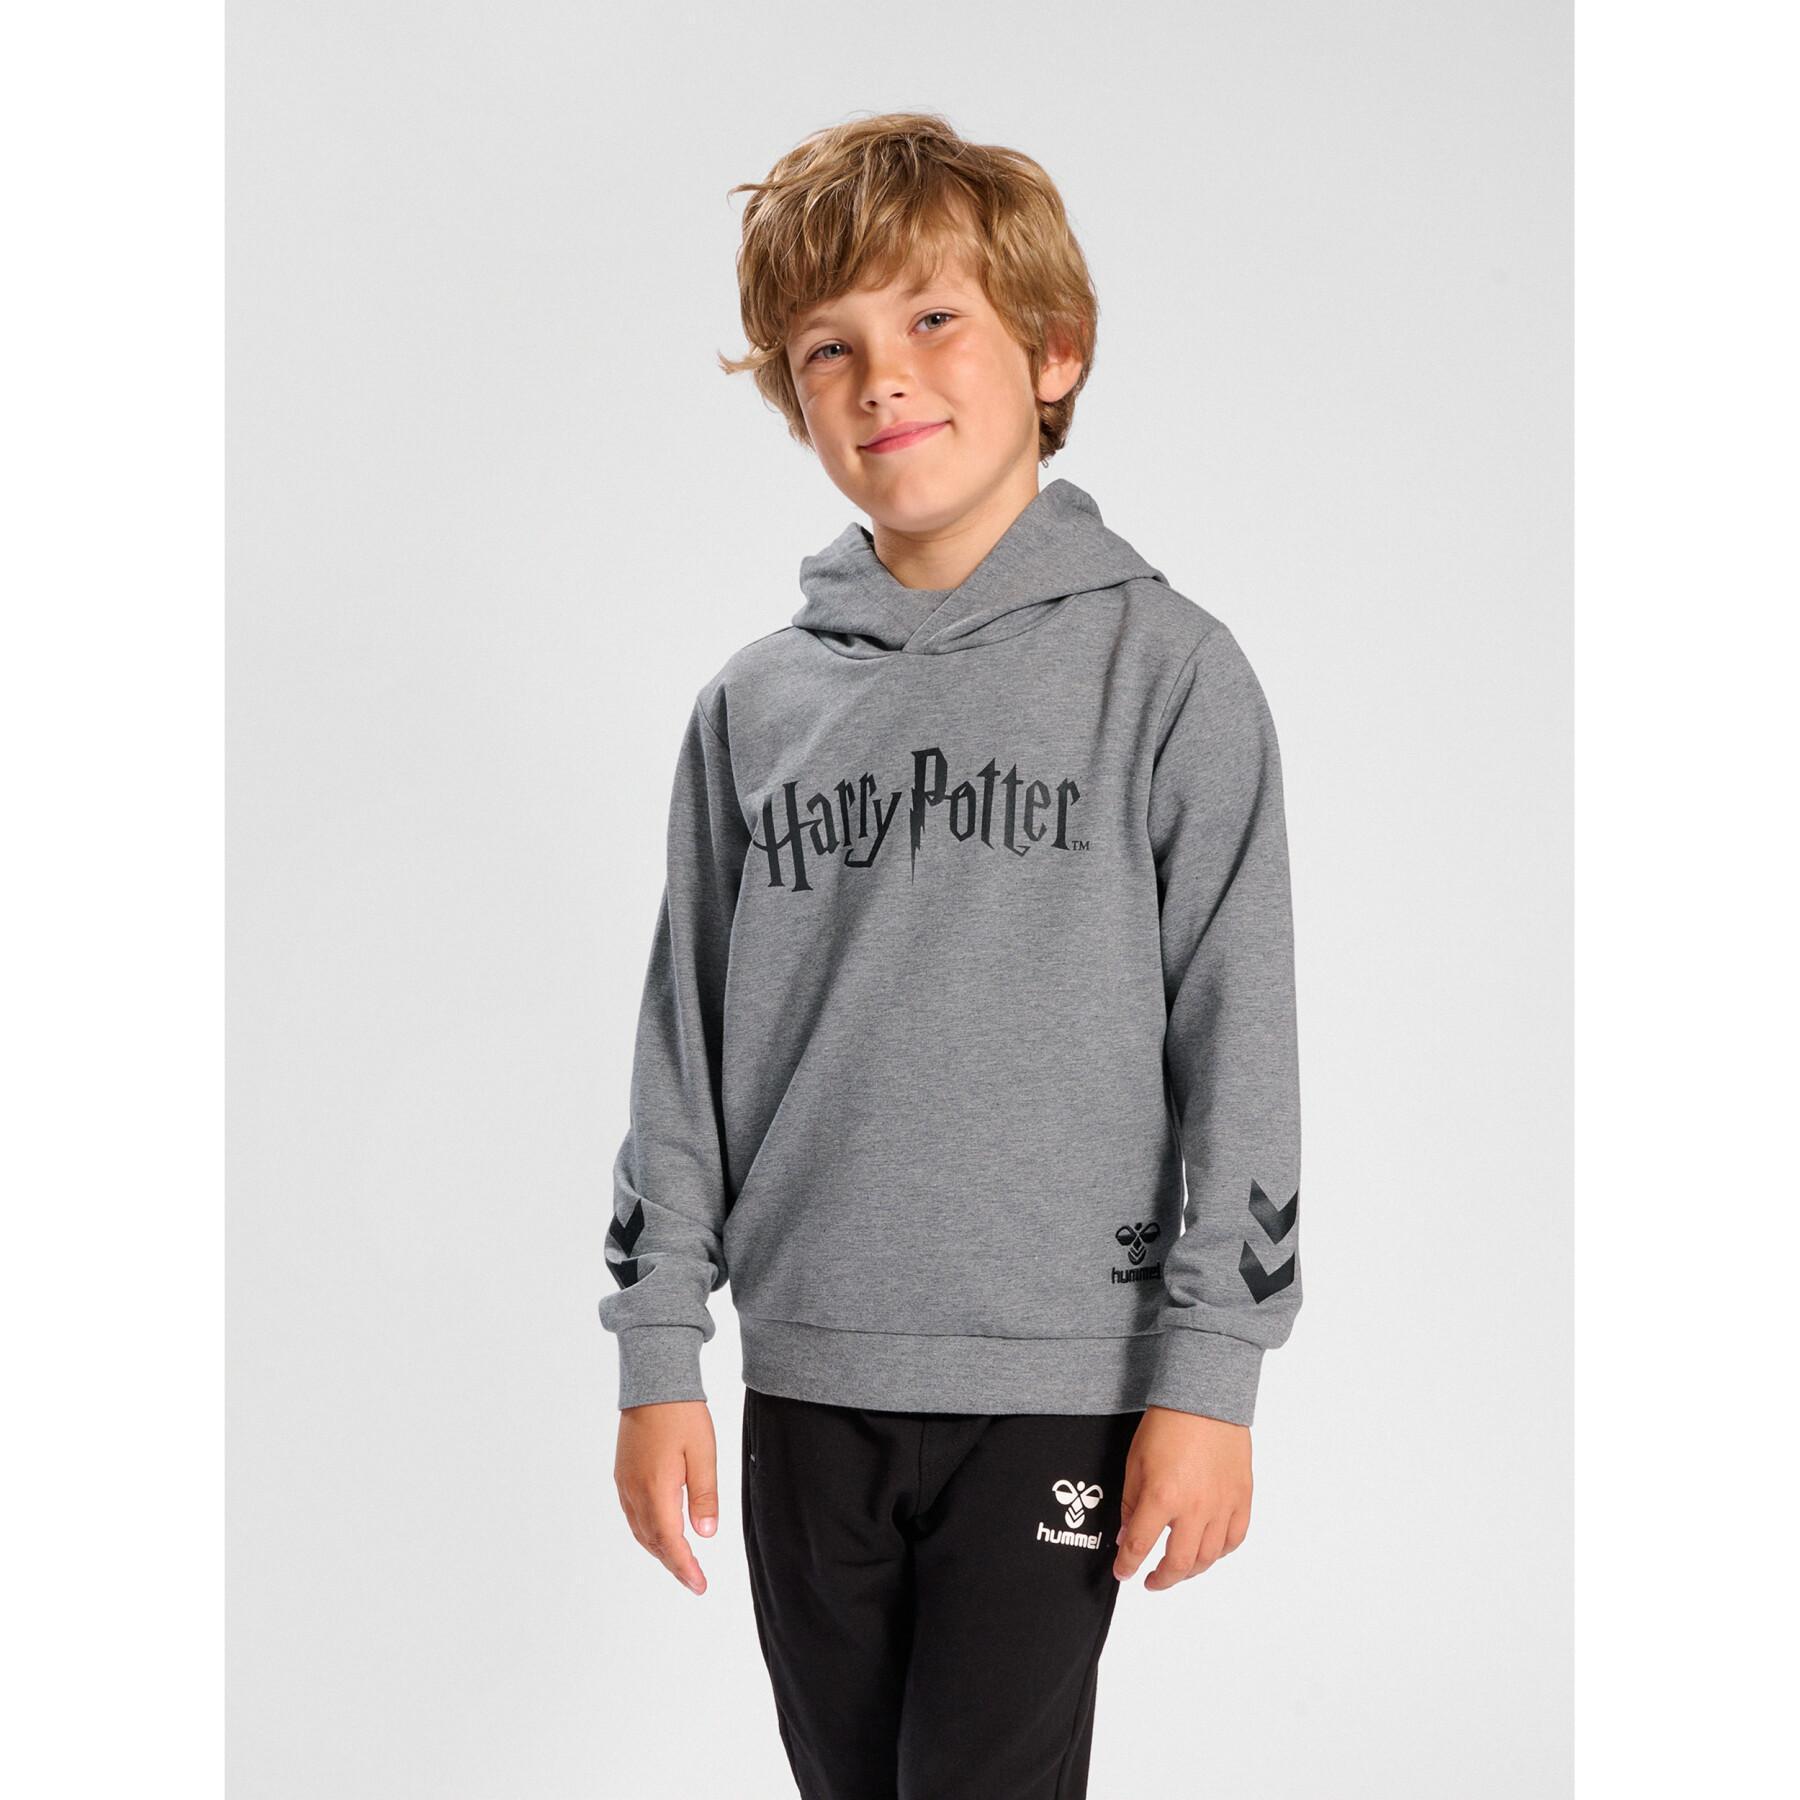 Camisola com capuz para criança Hummel Harry Potter